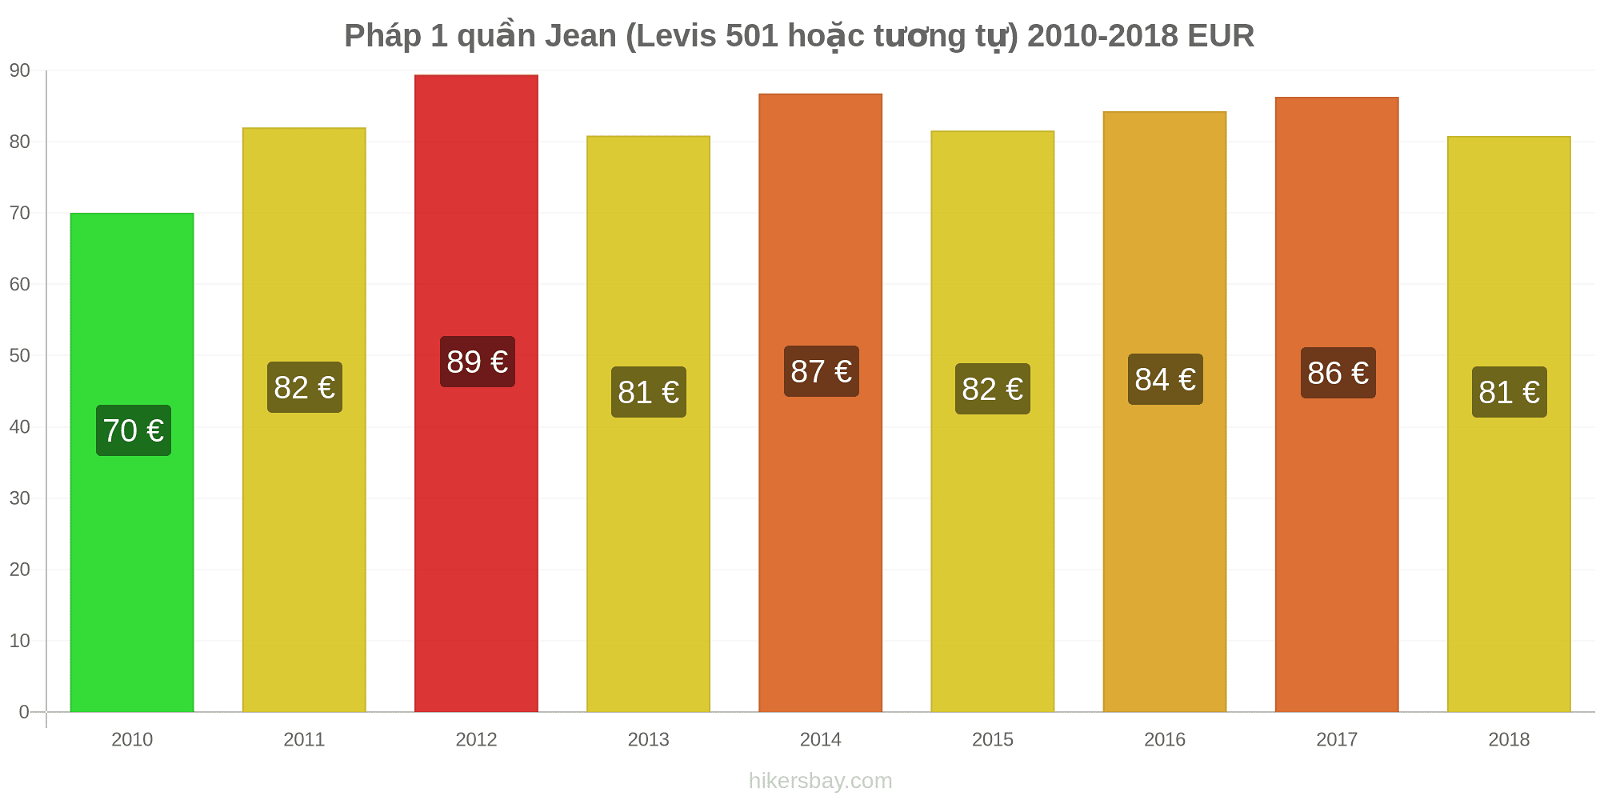 Pháp thay đổi giá cả 1 đôi quần jeans (Levis 501 hoặc tương tự) hikersbay.com